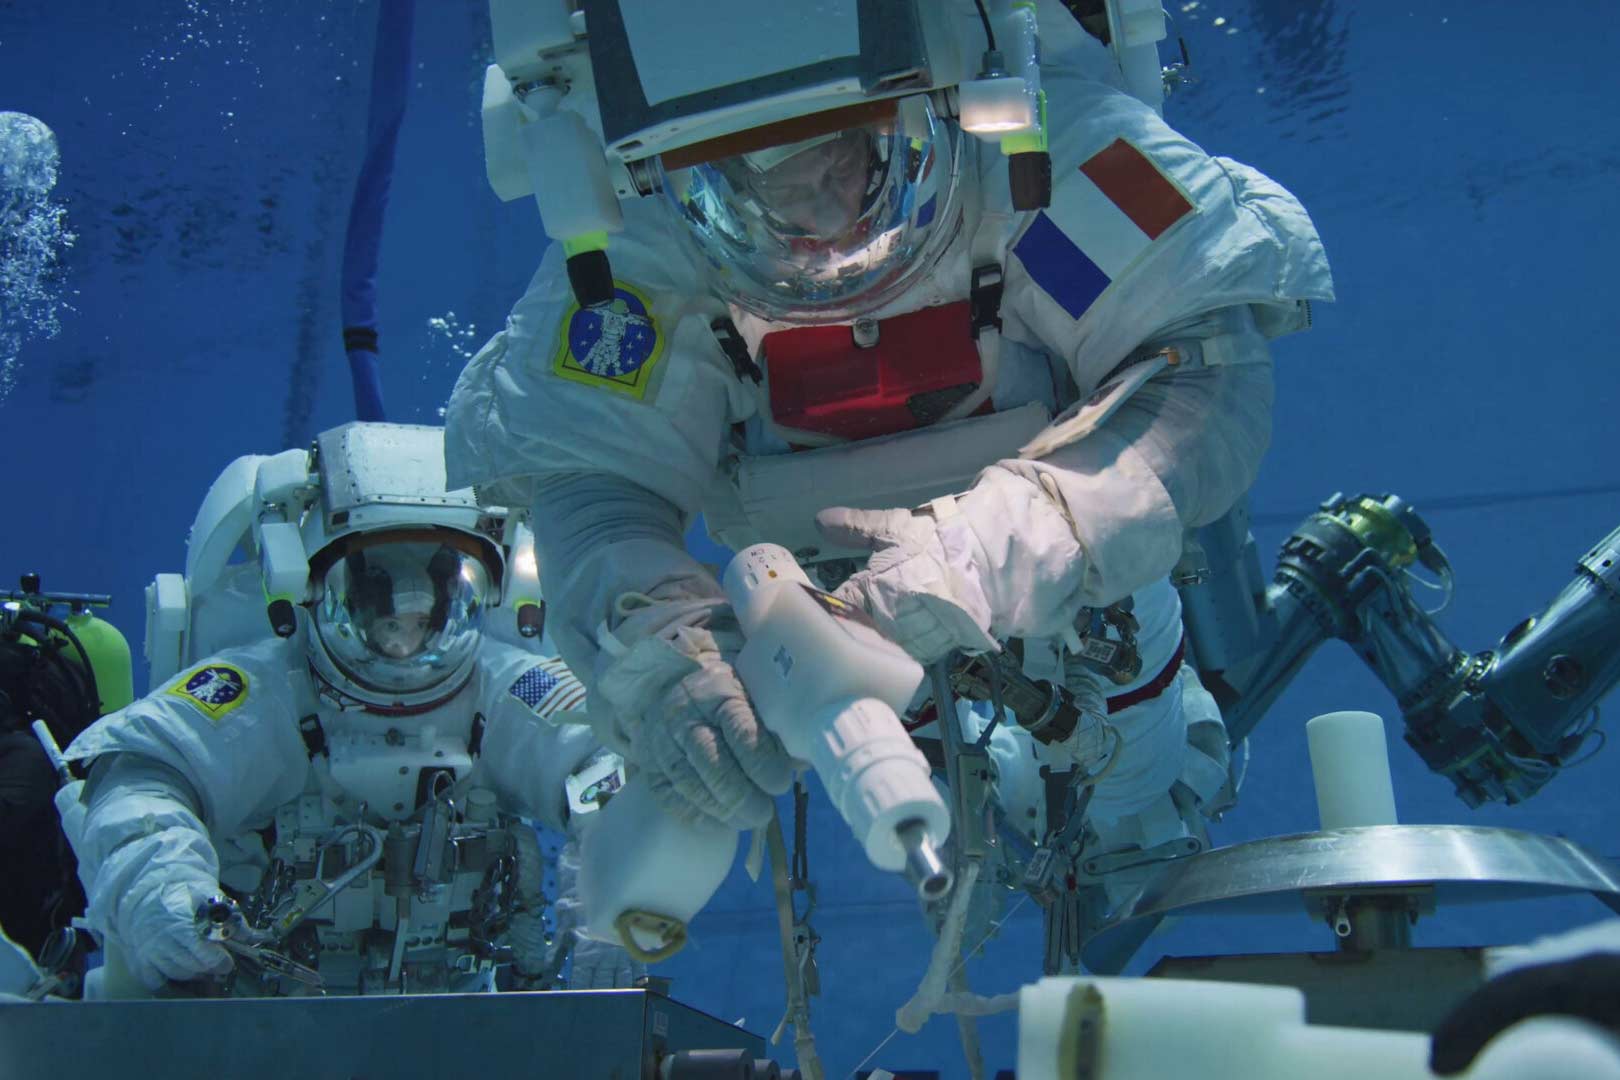 underwater spacewalk training 6473bbd1e3555704d4026be3